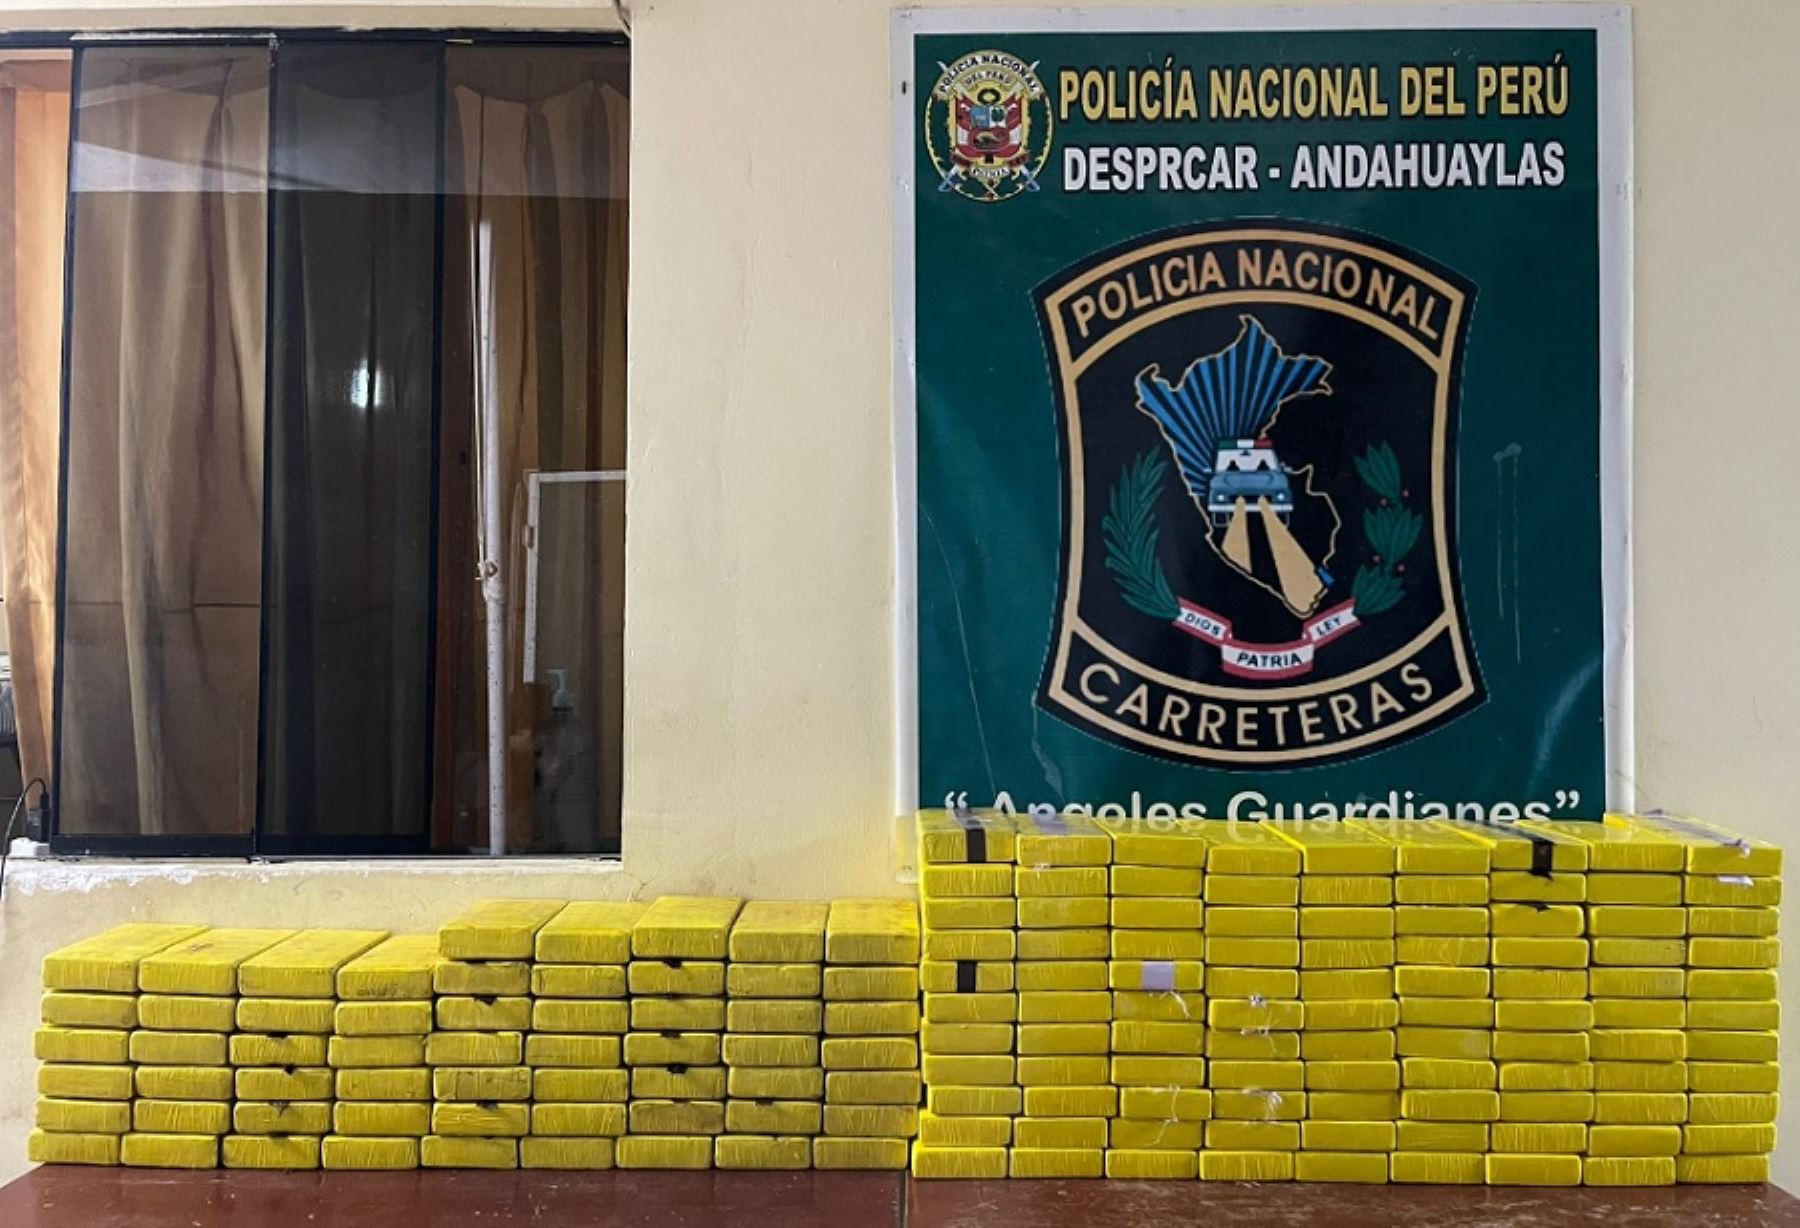 Un total de 158 paquetes de alcaloide de cocaína fueron decomisados por agentes antidrogas durante un operativo realizado en la vía nacional Ayacucho-Andahuaylas. También se detuvo a tres personas implicadas en el presunto delito de tráfico ilícito de drogas.